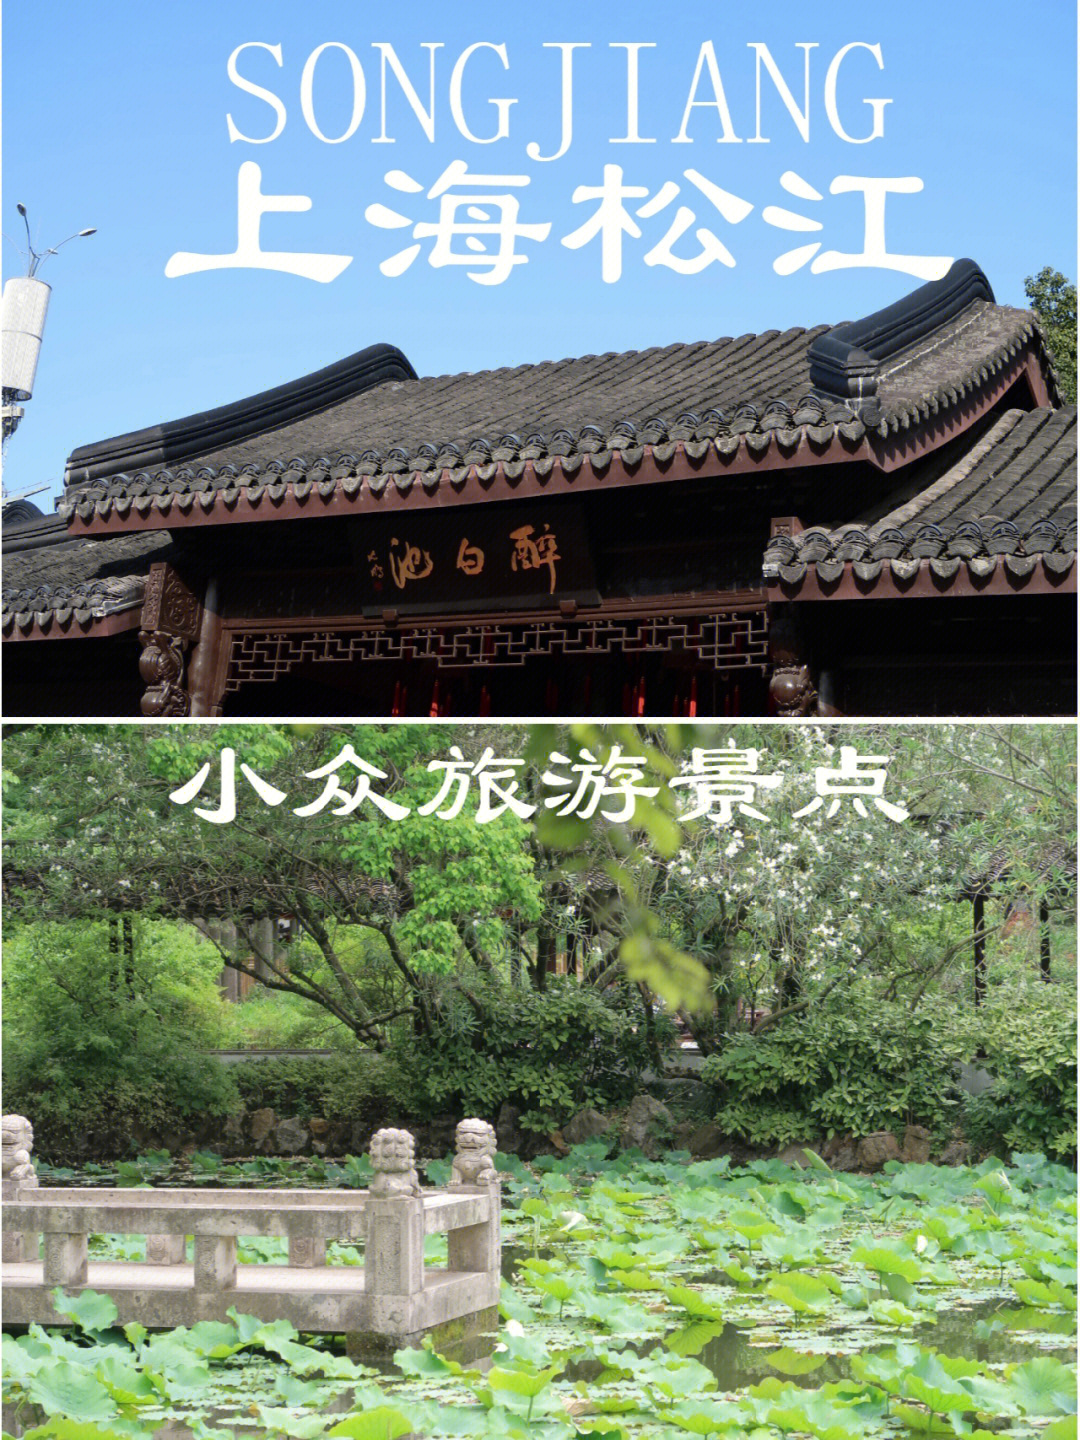 上海醉白池公园地址图片